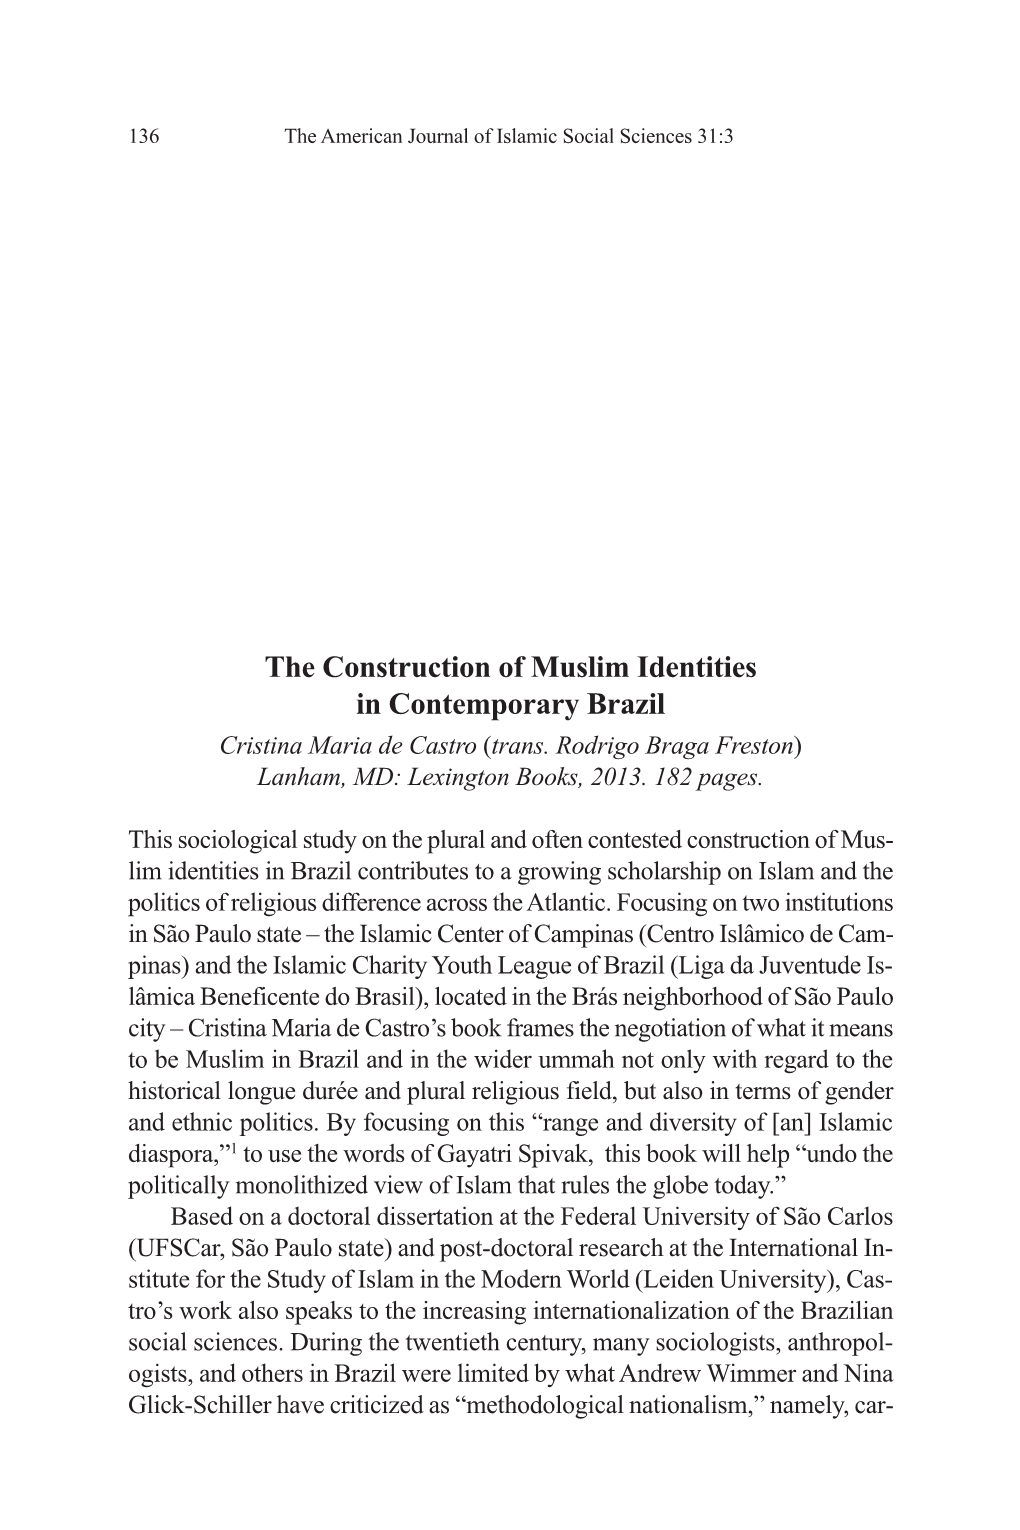 The Construction of Muslim Identities in Contemporary Brazil Cristina Maria De Castro (Trans